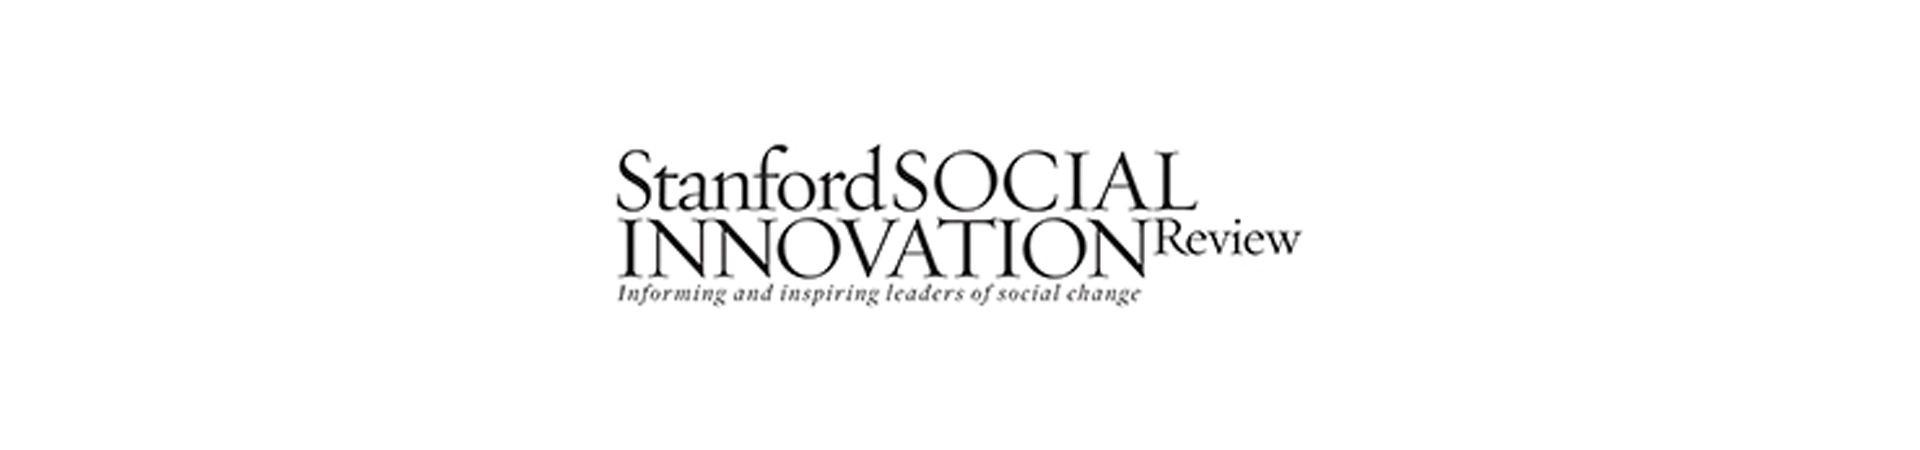 Stanford Social Innovation Review El poder de la salud mental para romper ciclos de violencia y promover la paz